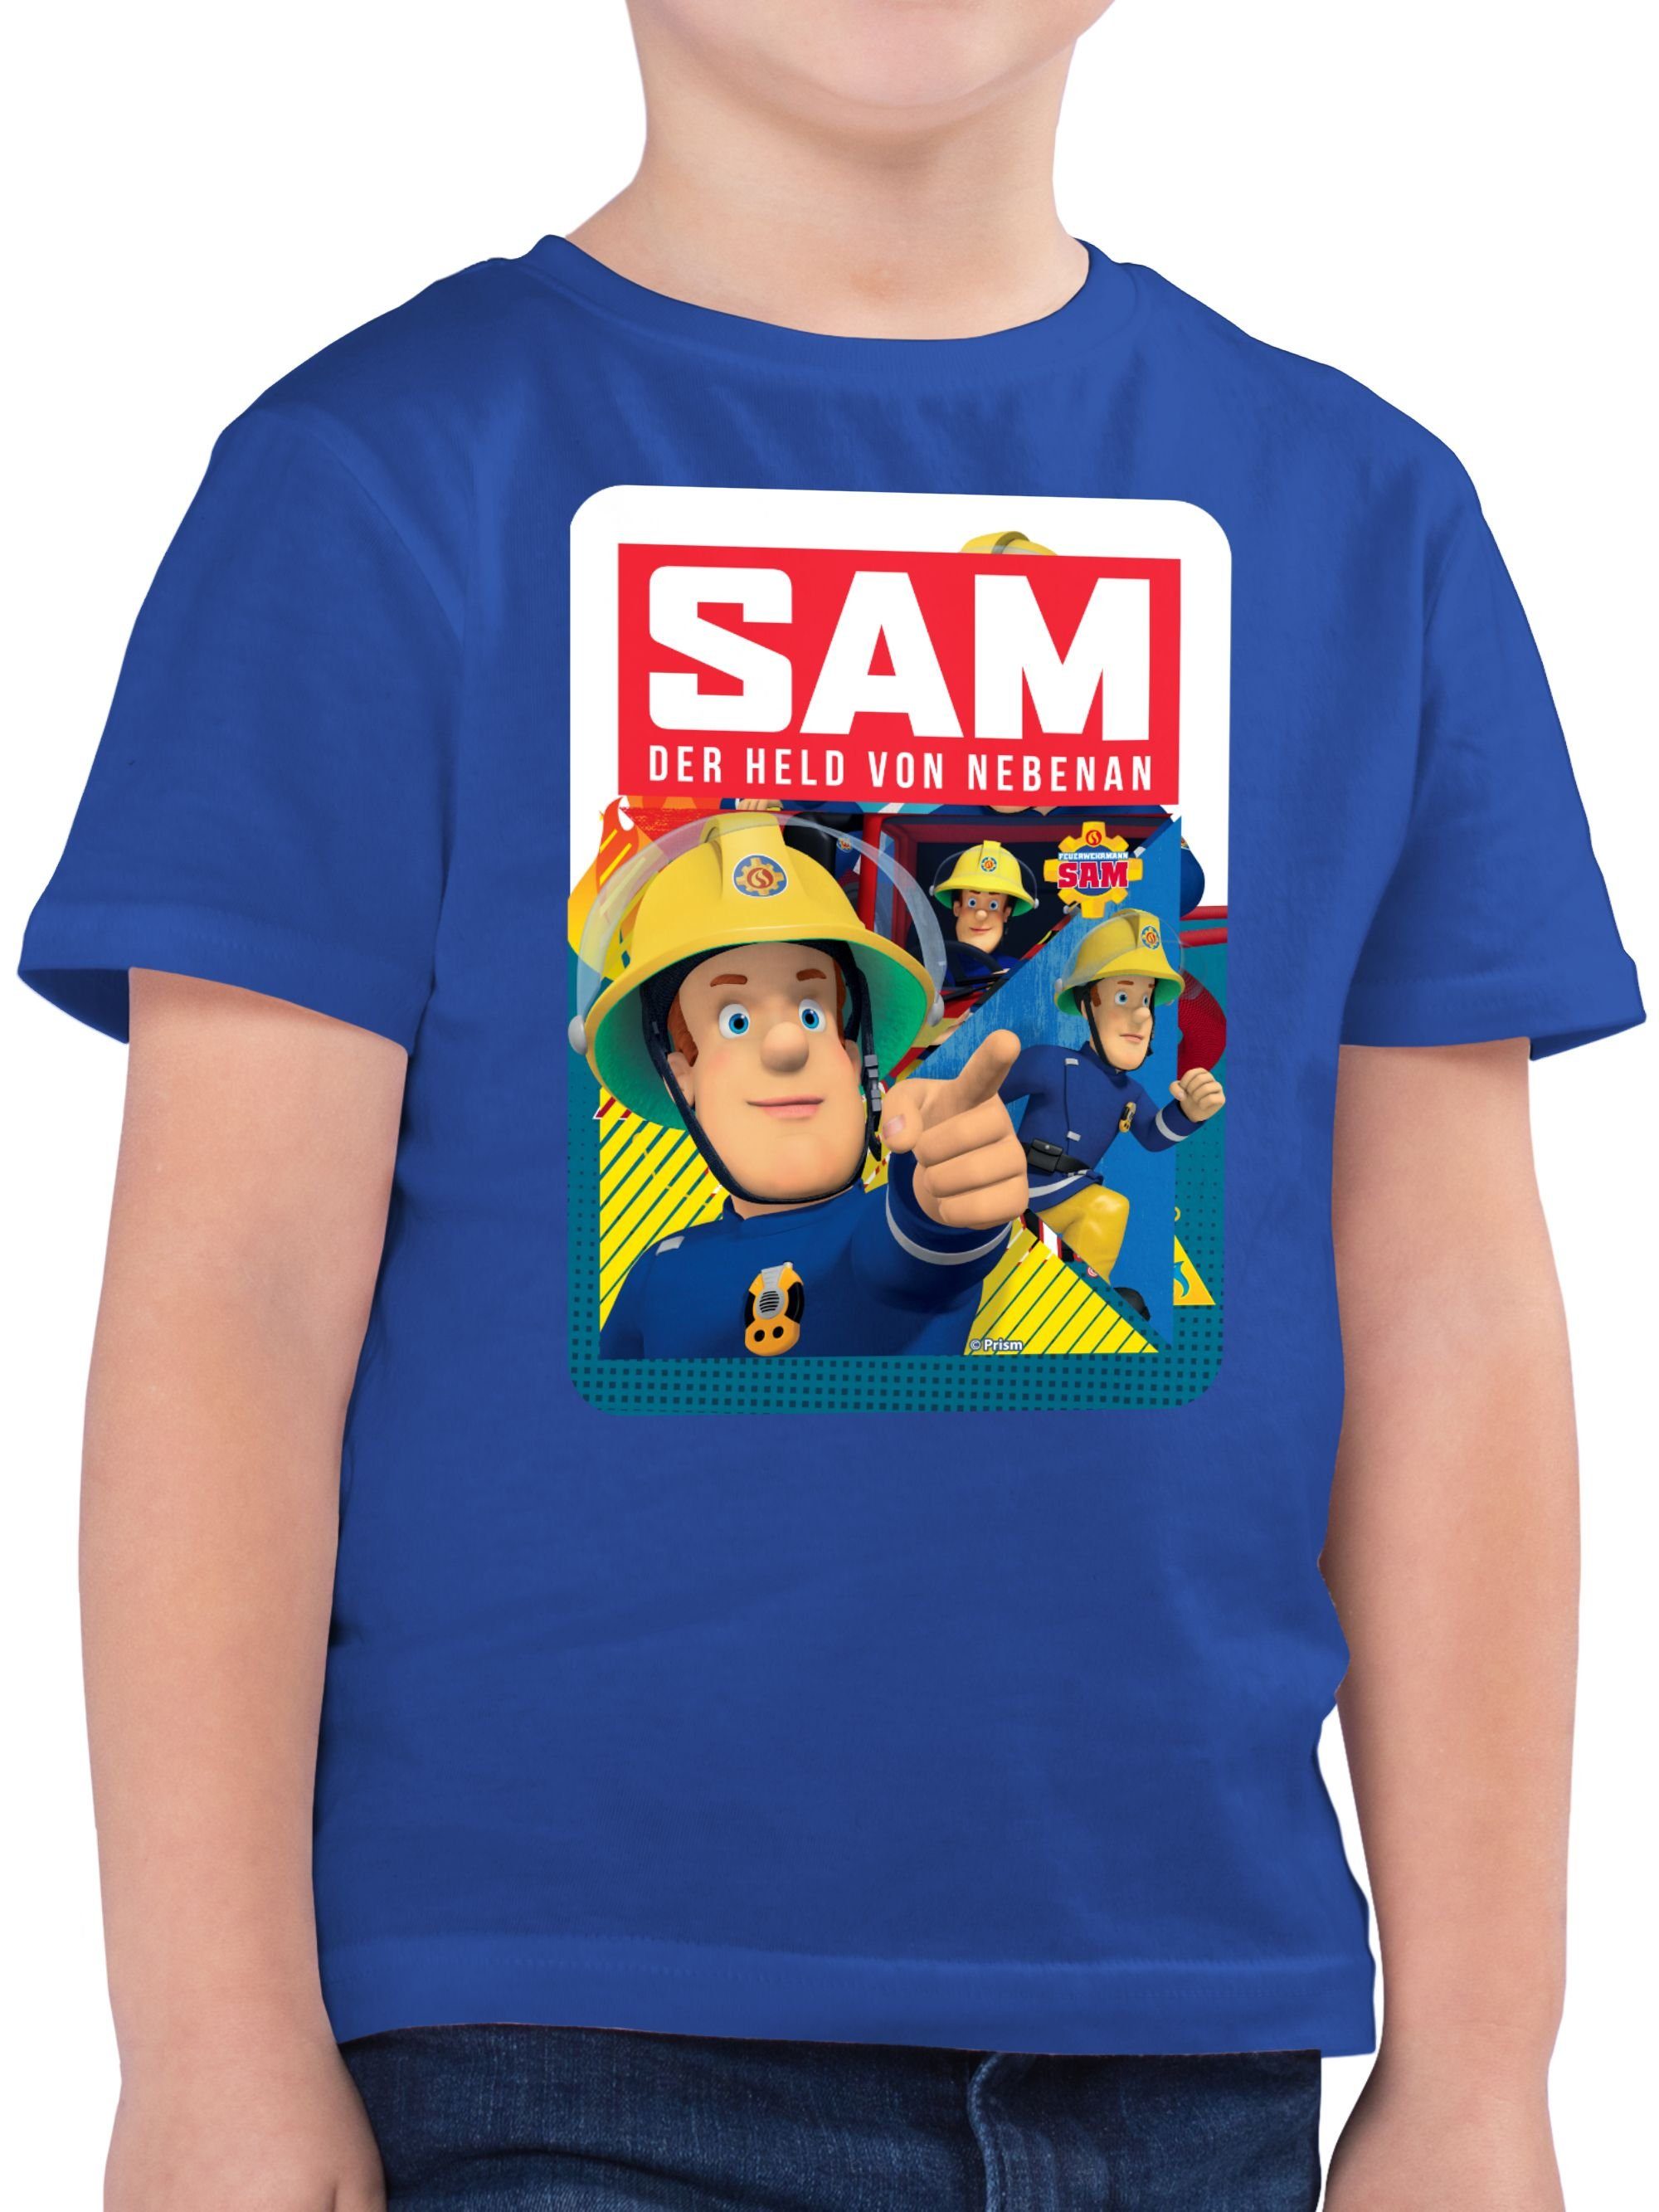 T-Shirt von Jungen 02 Shirtracer Feuerwehrmann Sam Sam Held Royalblau nebenan der